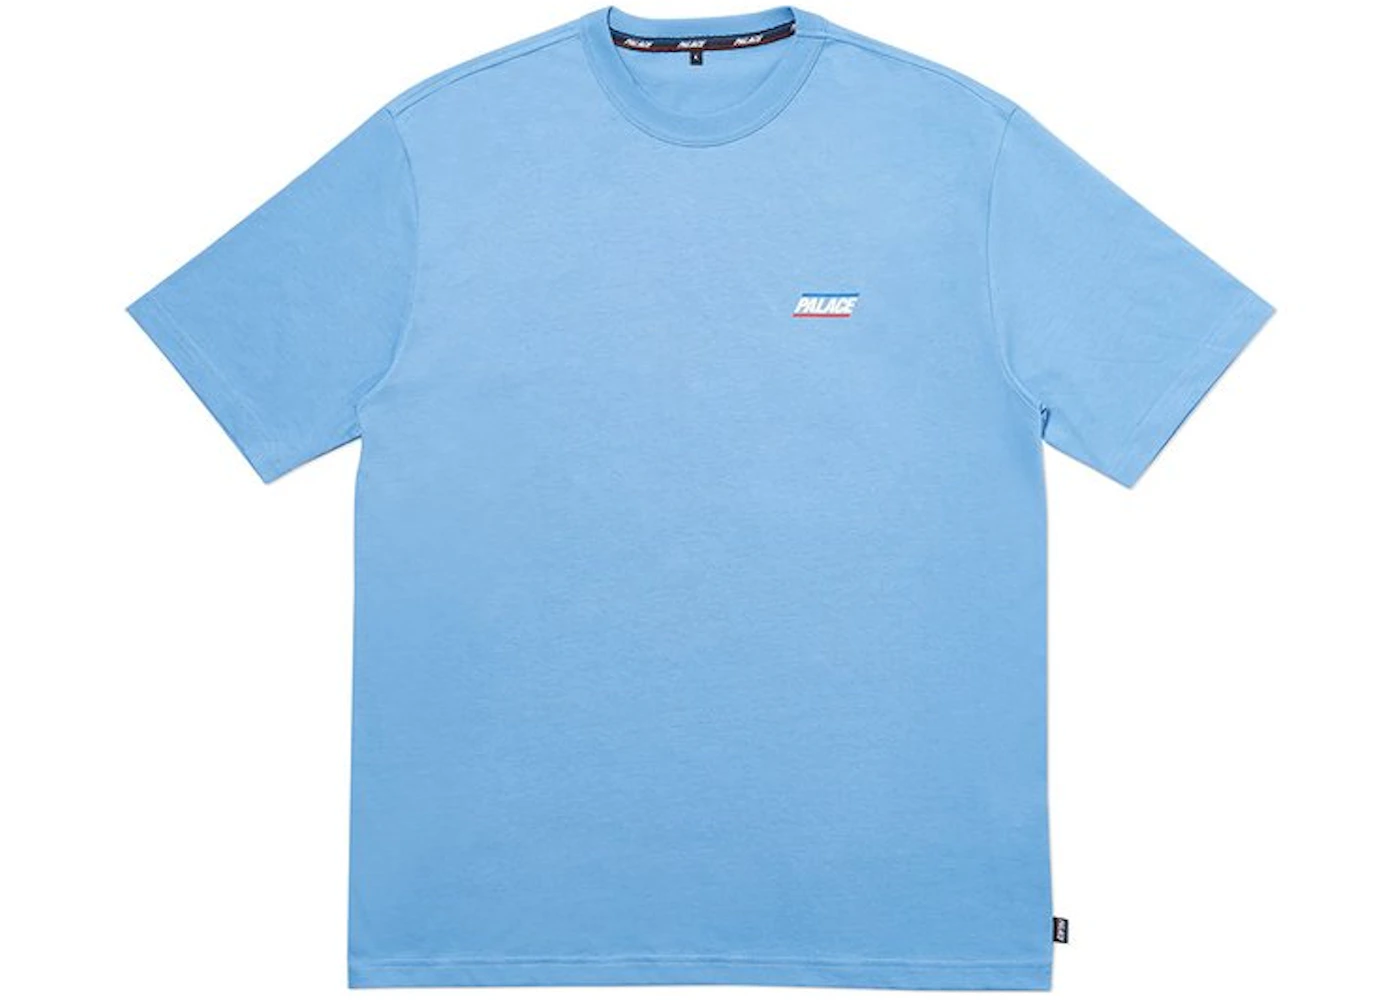 Palace Basically A (SS20) T-Shirt Cornflower Blue Men's - SS20 - US